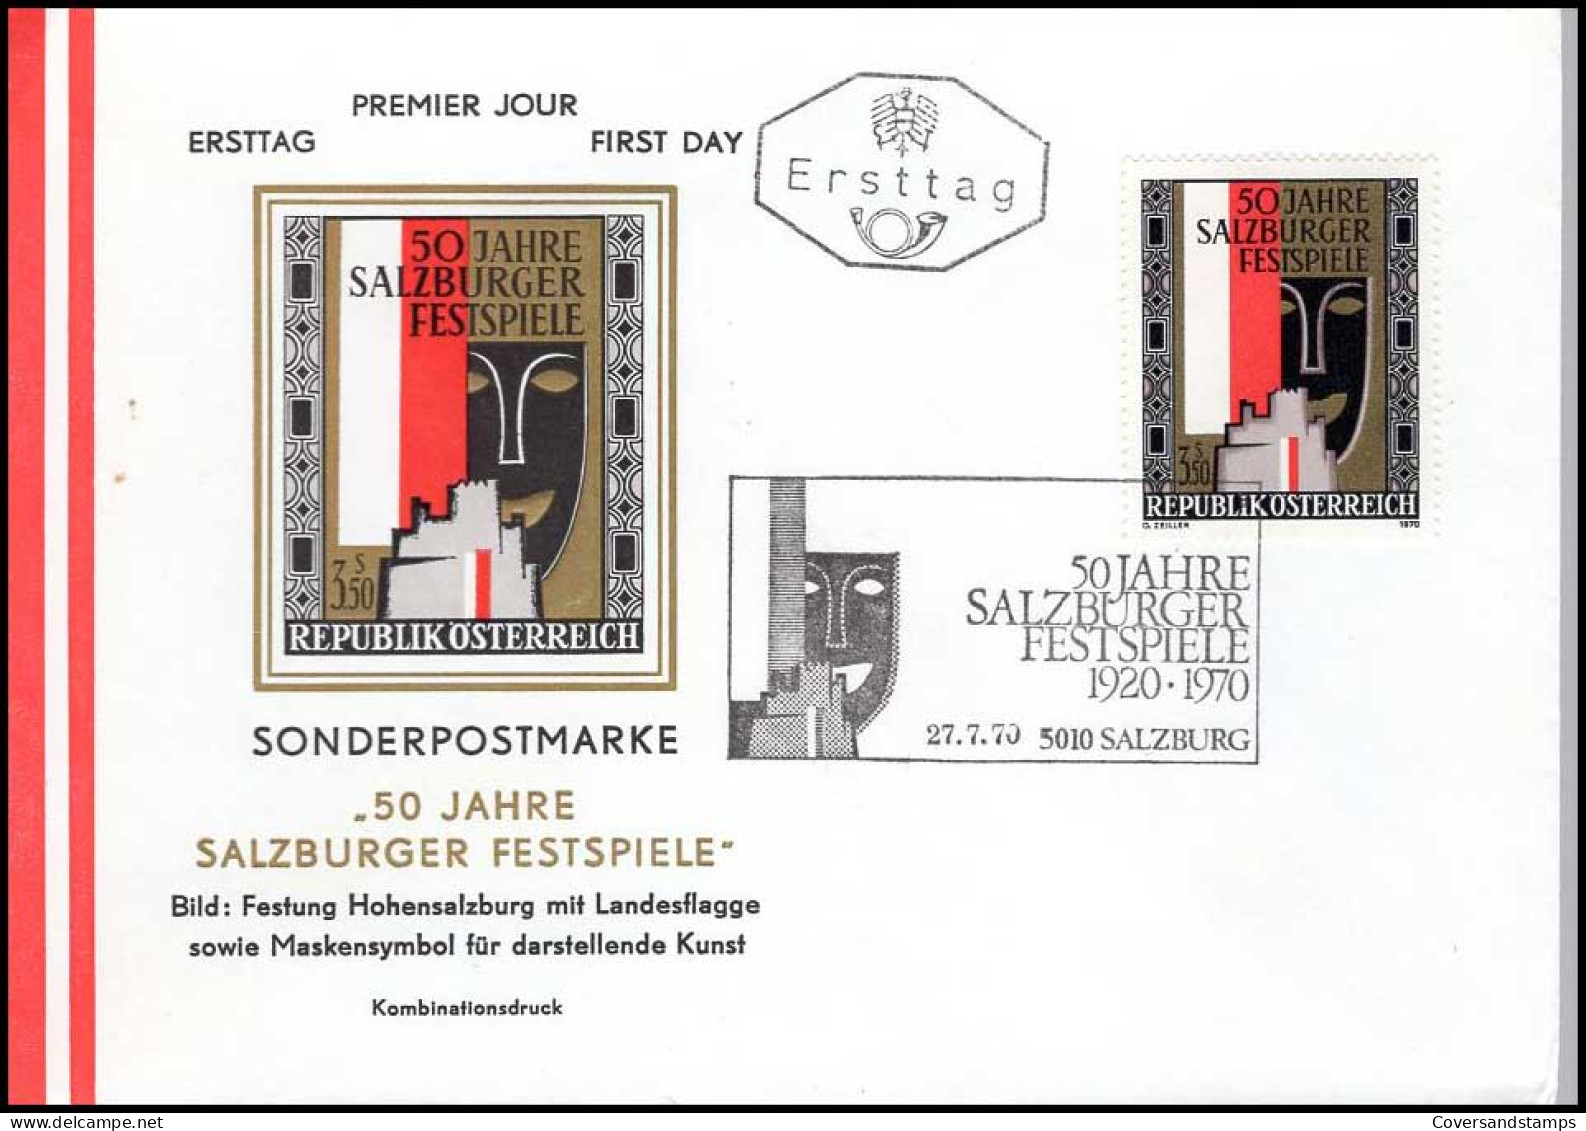 Sonderpostmarke '50 Jahre Salzburger Festspiele' - FDC